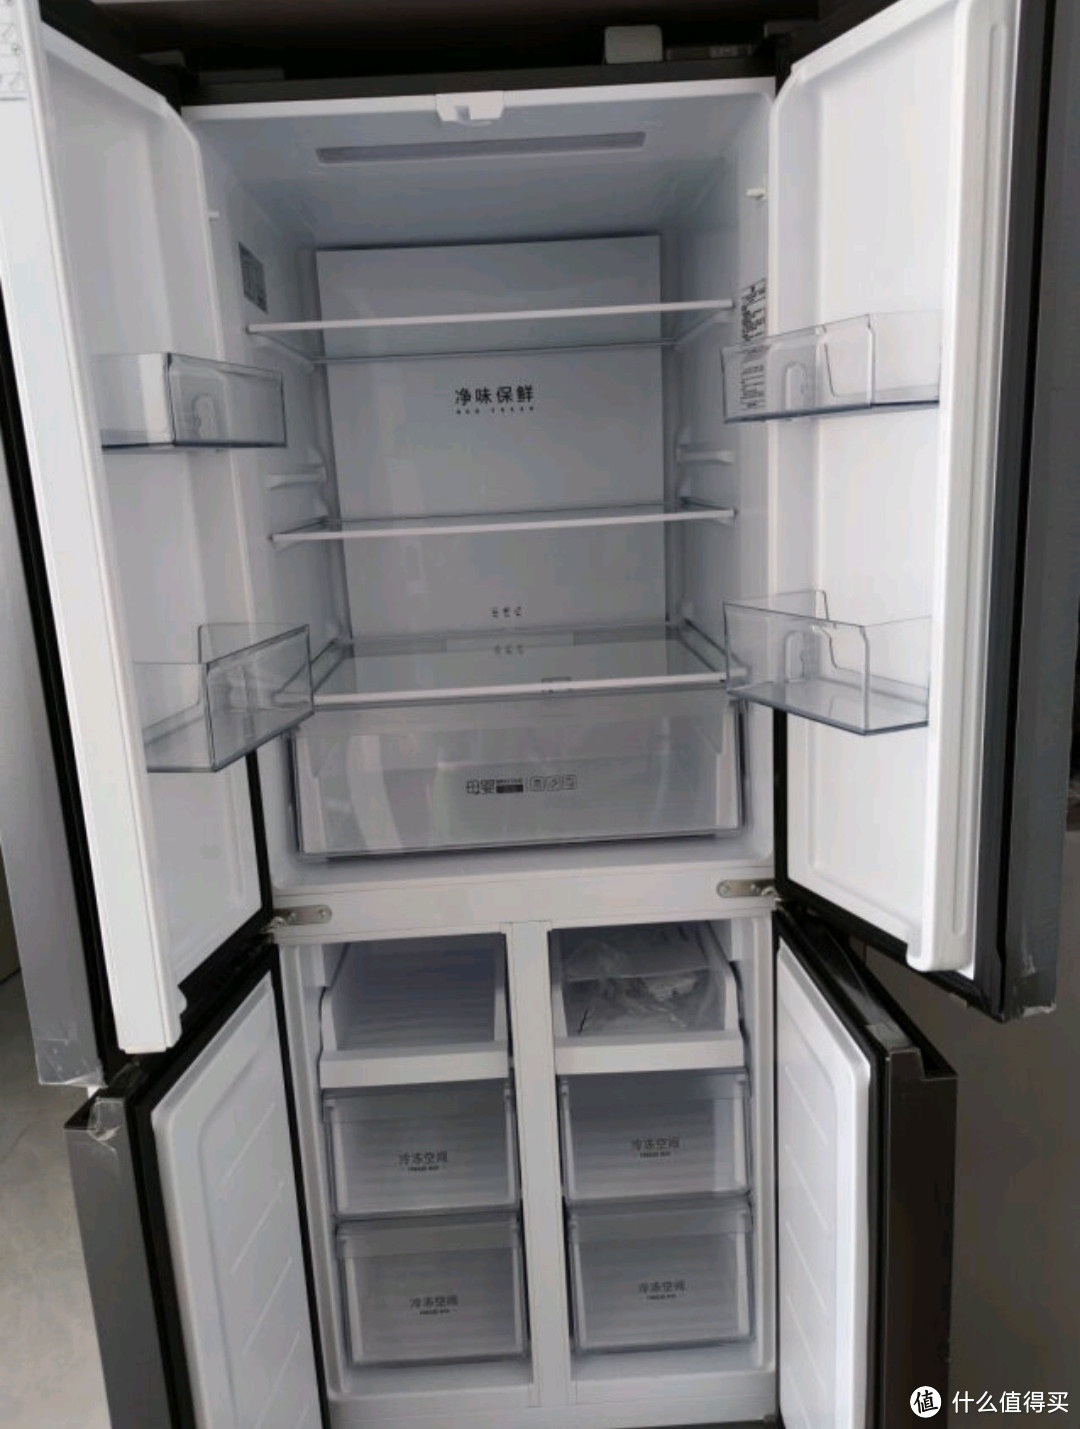 智能家居之智能冰箱选购基础要素